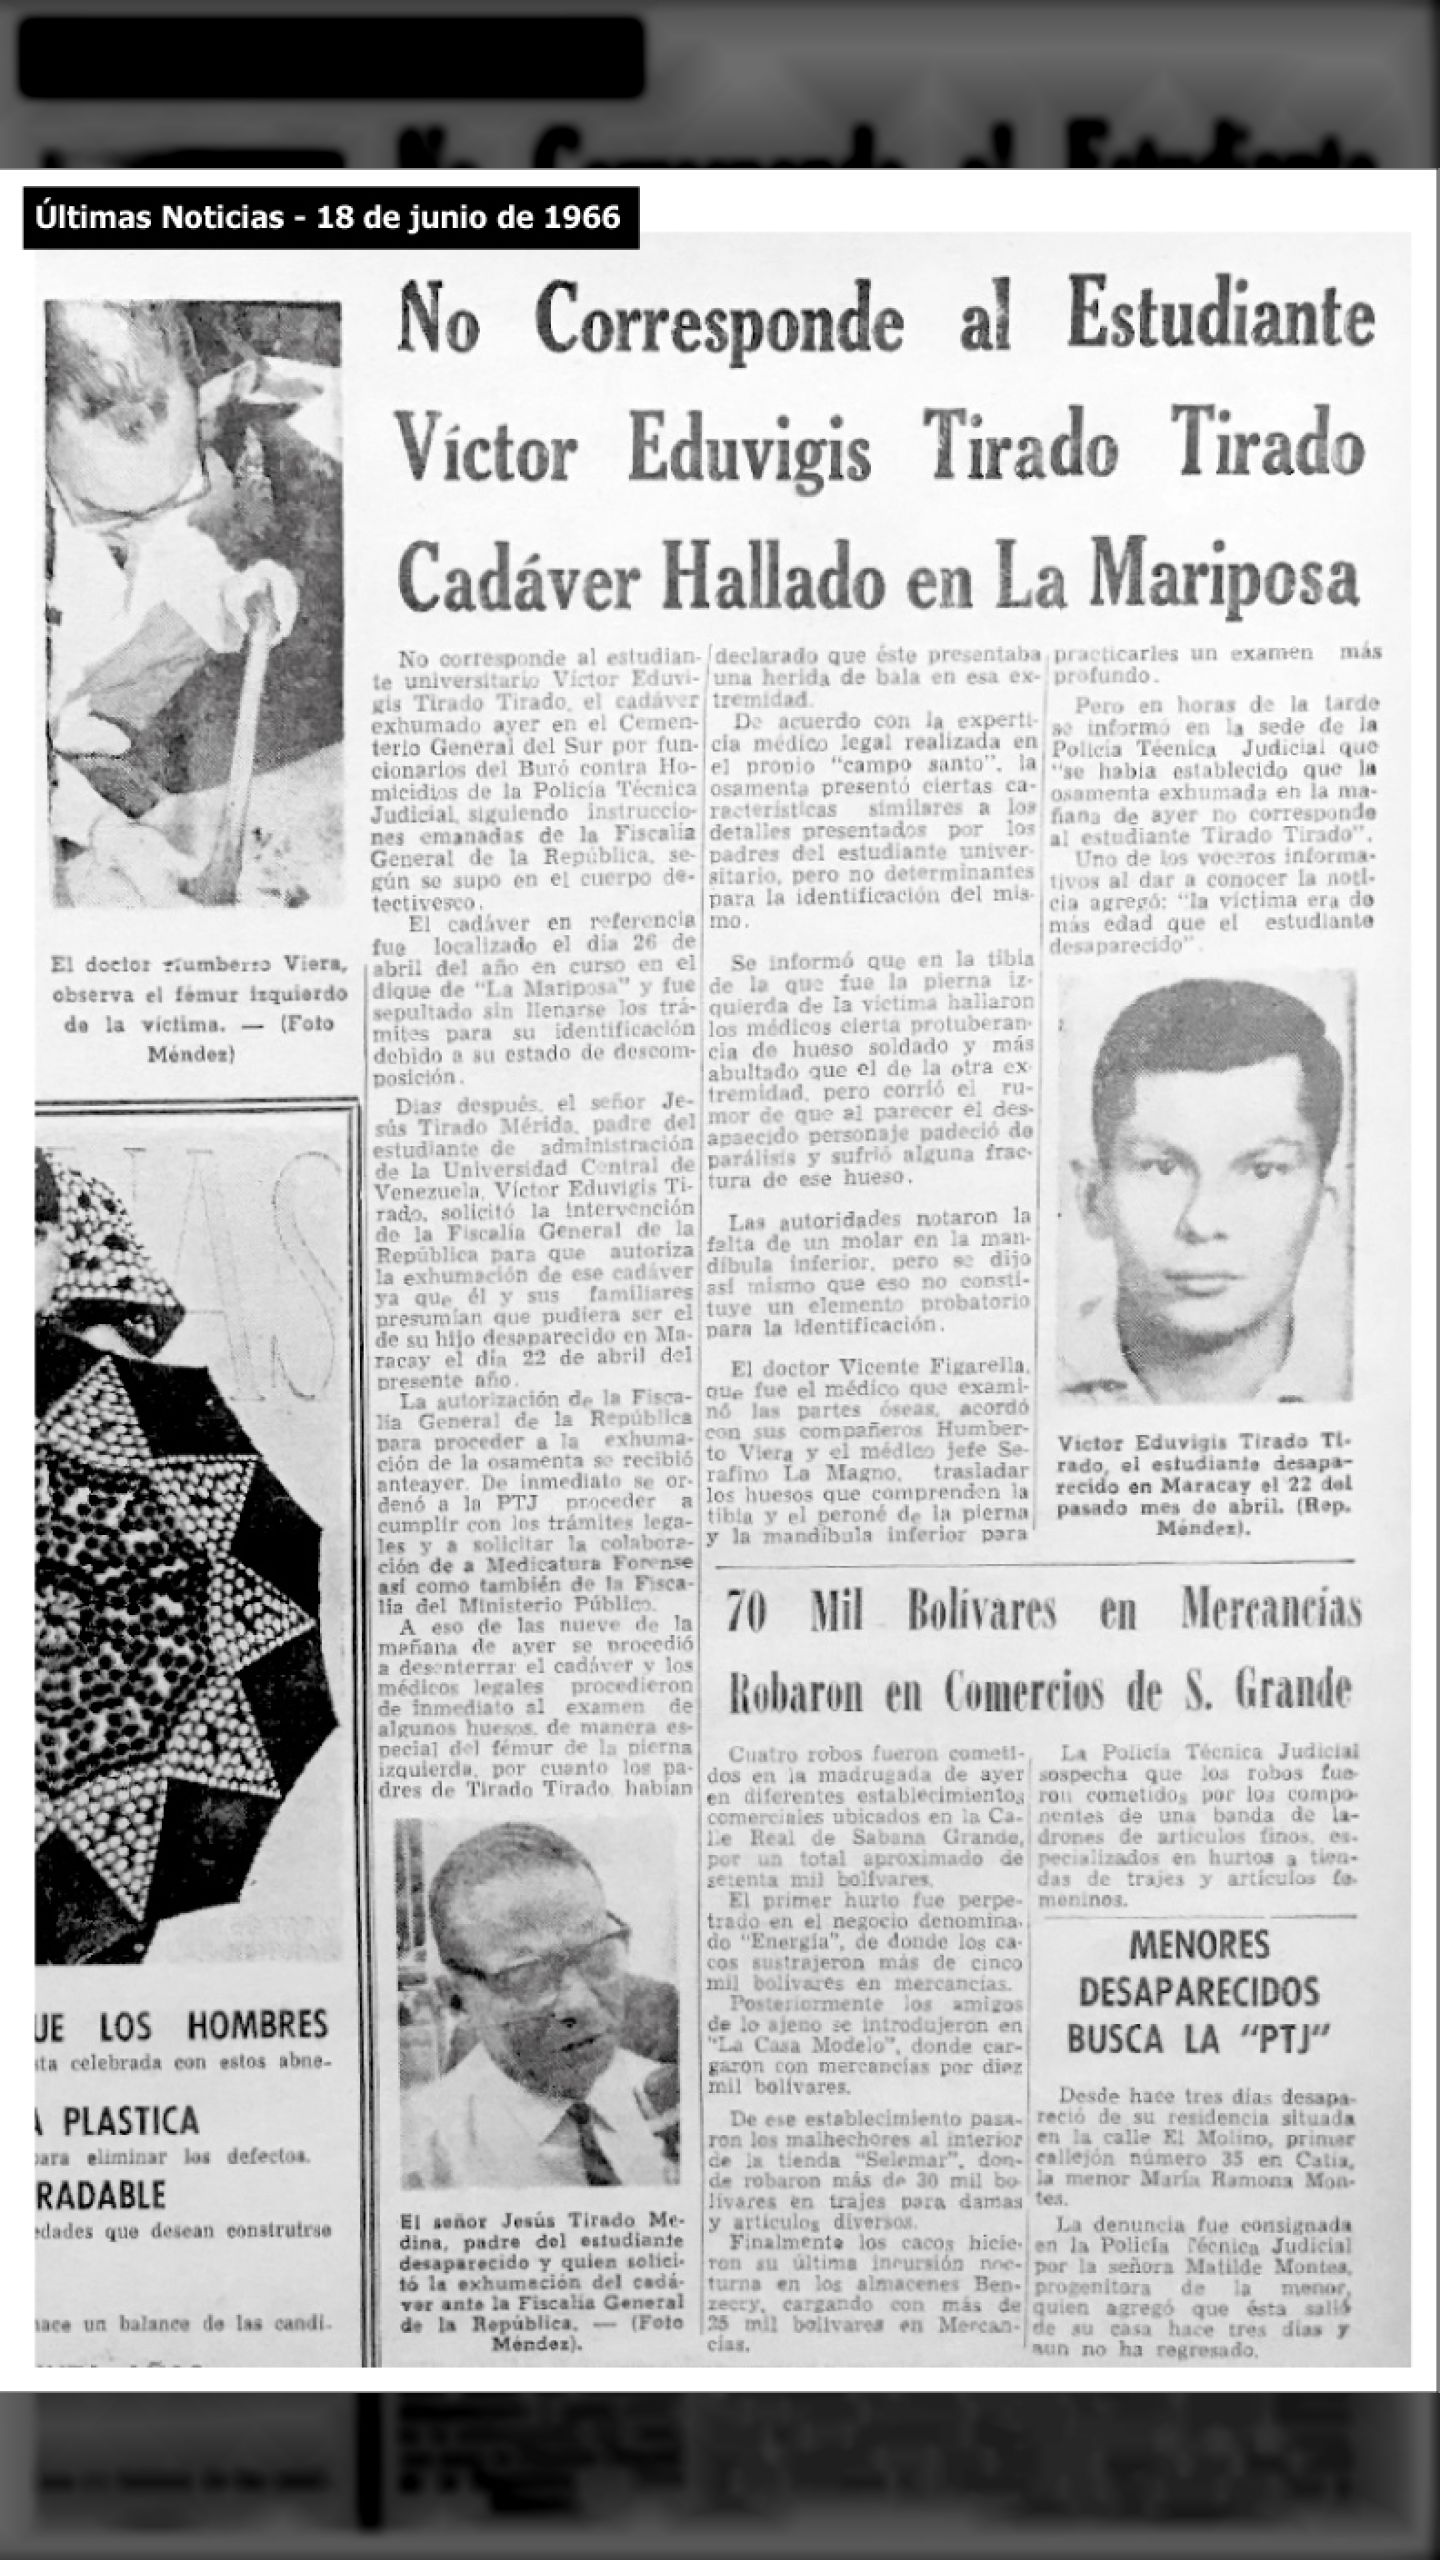 ES SECUESTRADO Y DESAPARECIDO POR LA DIGEPOL VÍCTOR TIRADO  (ÚLTIMAS NOTICIAS, 18 de junio 1966)